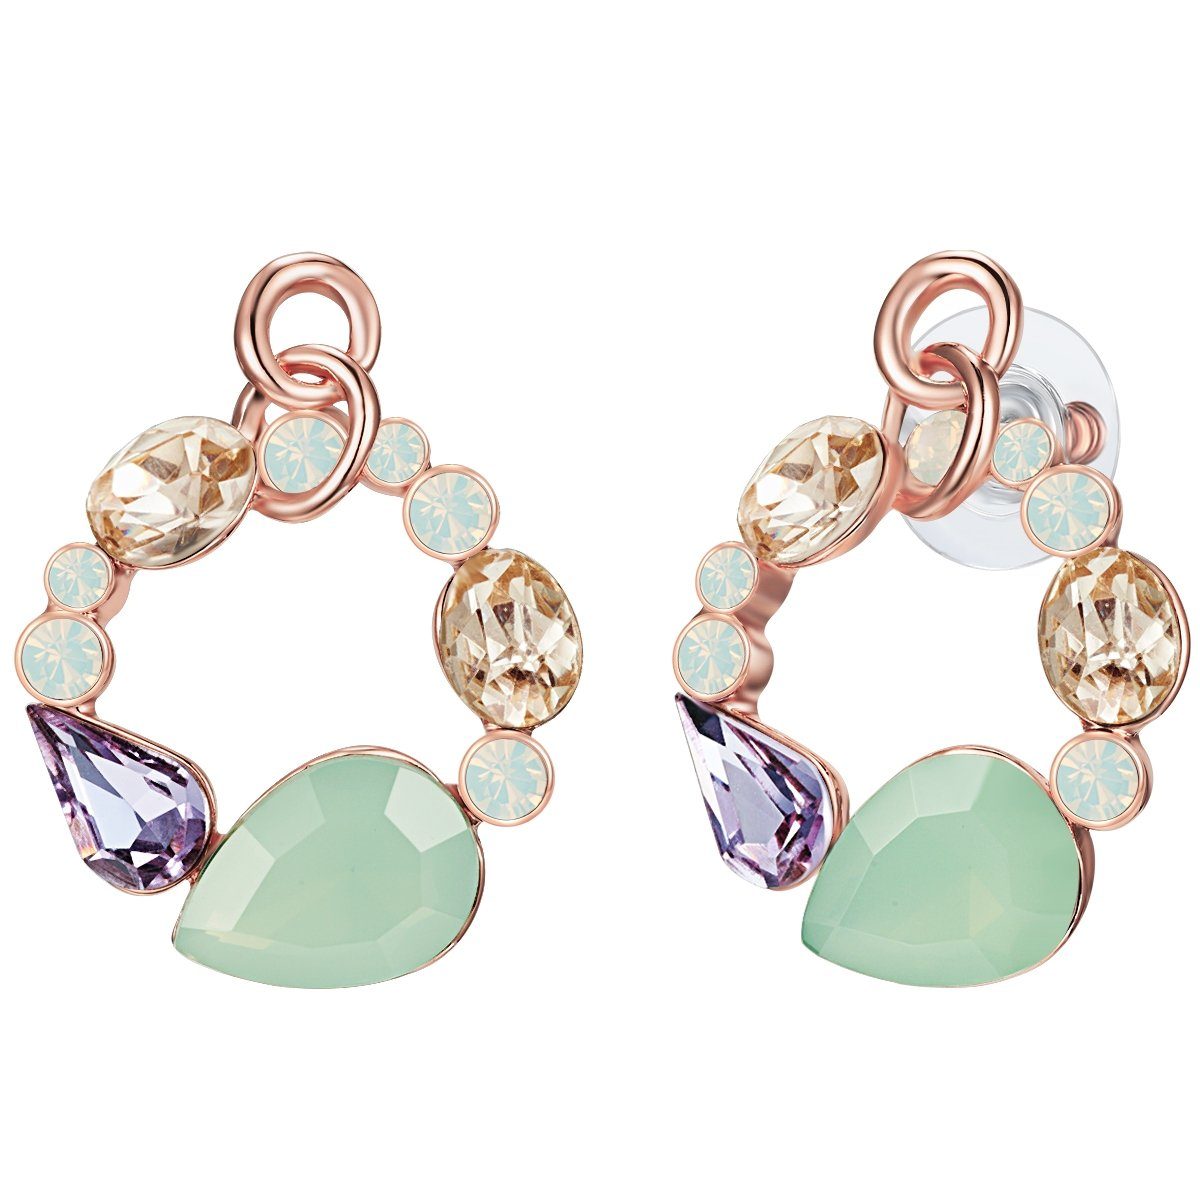 Lulu & Jane Paar Ohrhänger Ohrhänger roségold verziert mit Kristallen von Swarovski® weiß Glas lila gelb